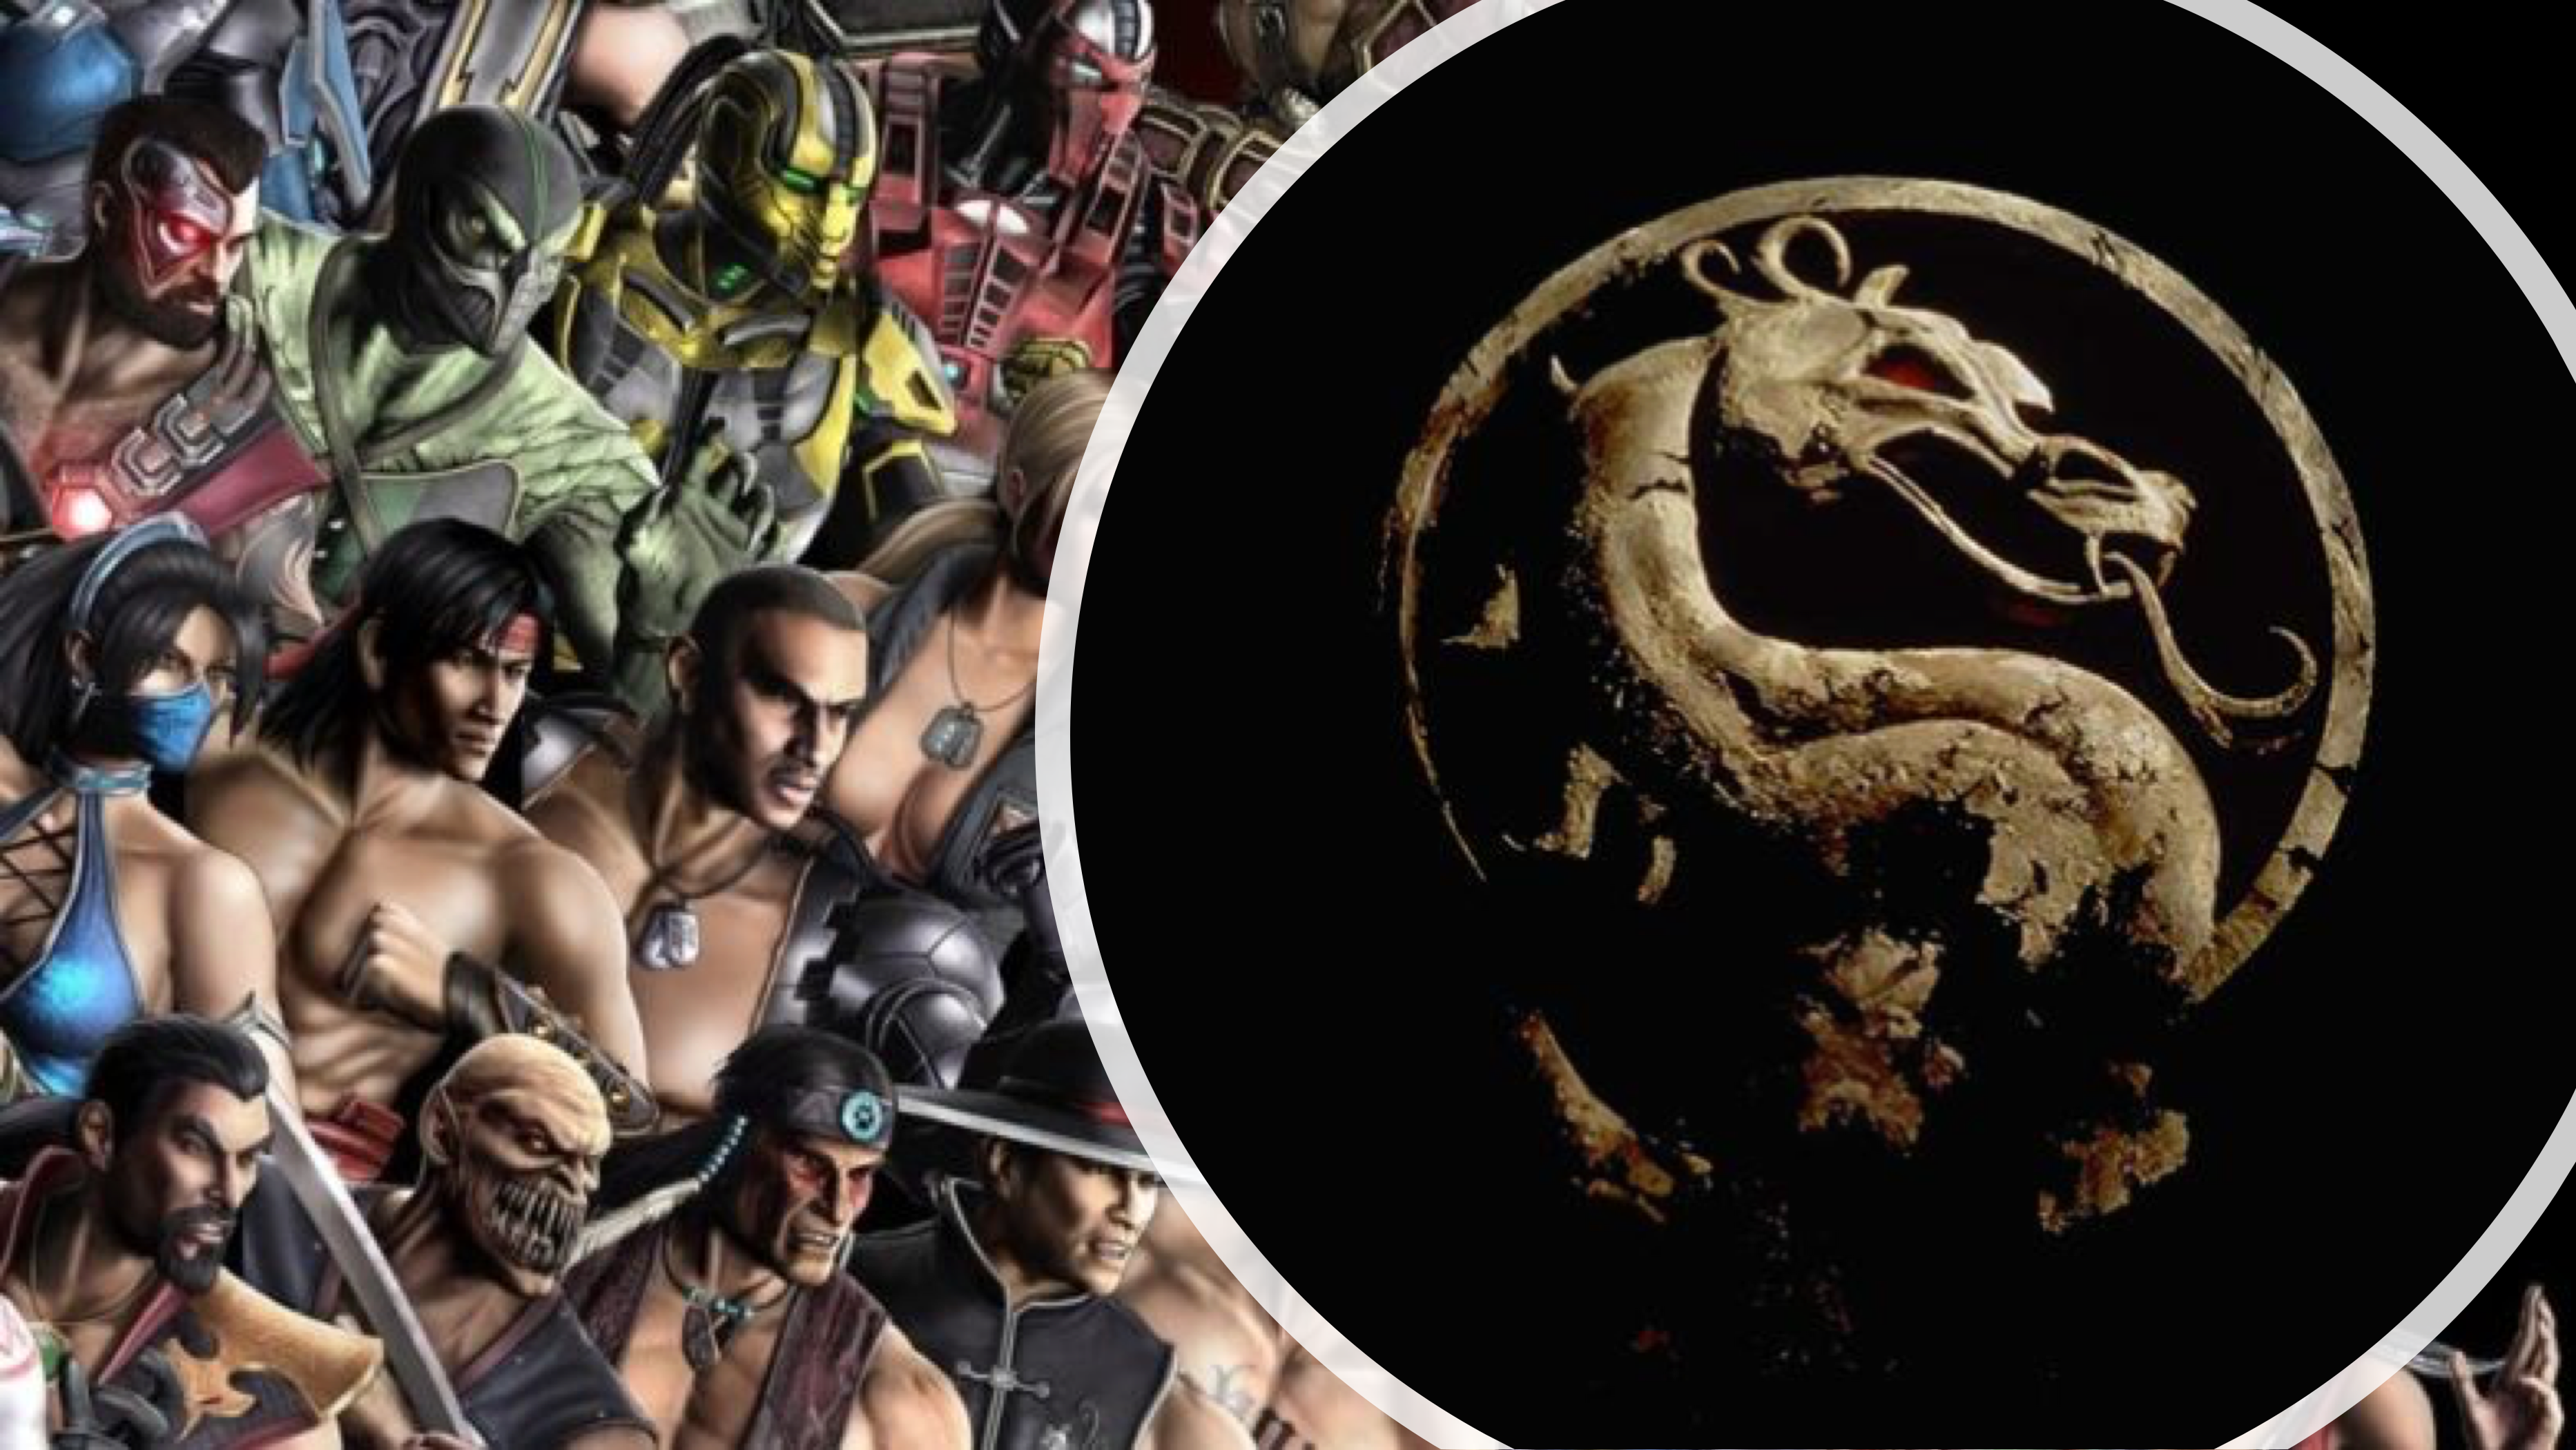 Mortal Kombat: Josh Lawson Calls Role a 'Childhood Dream Come True